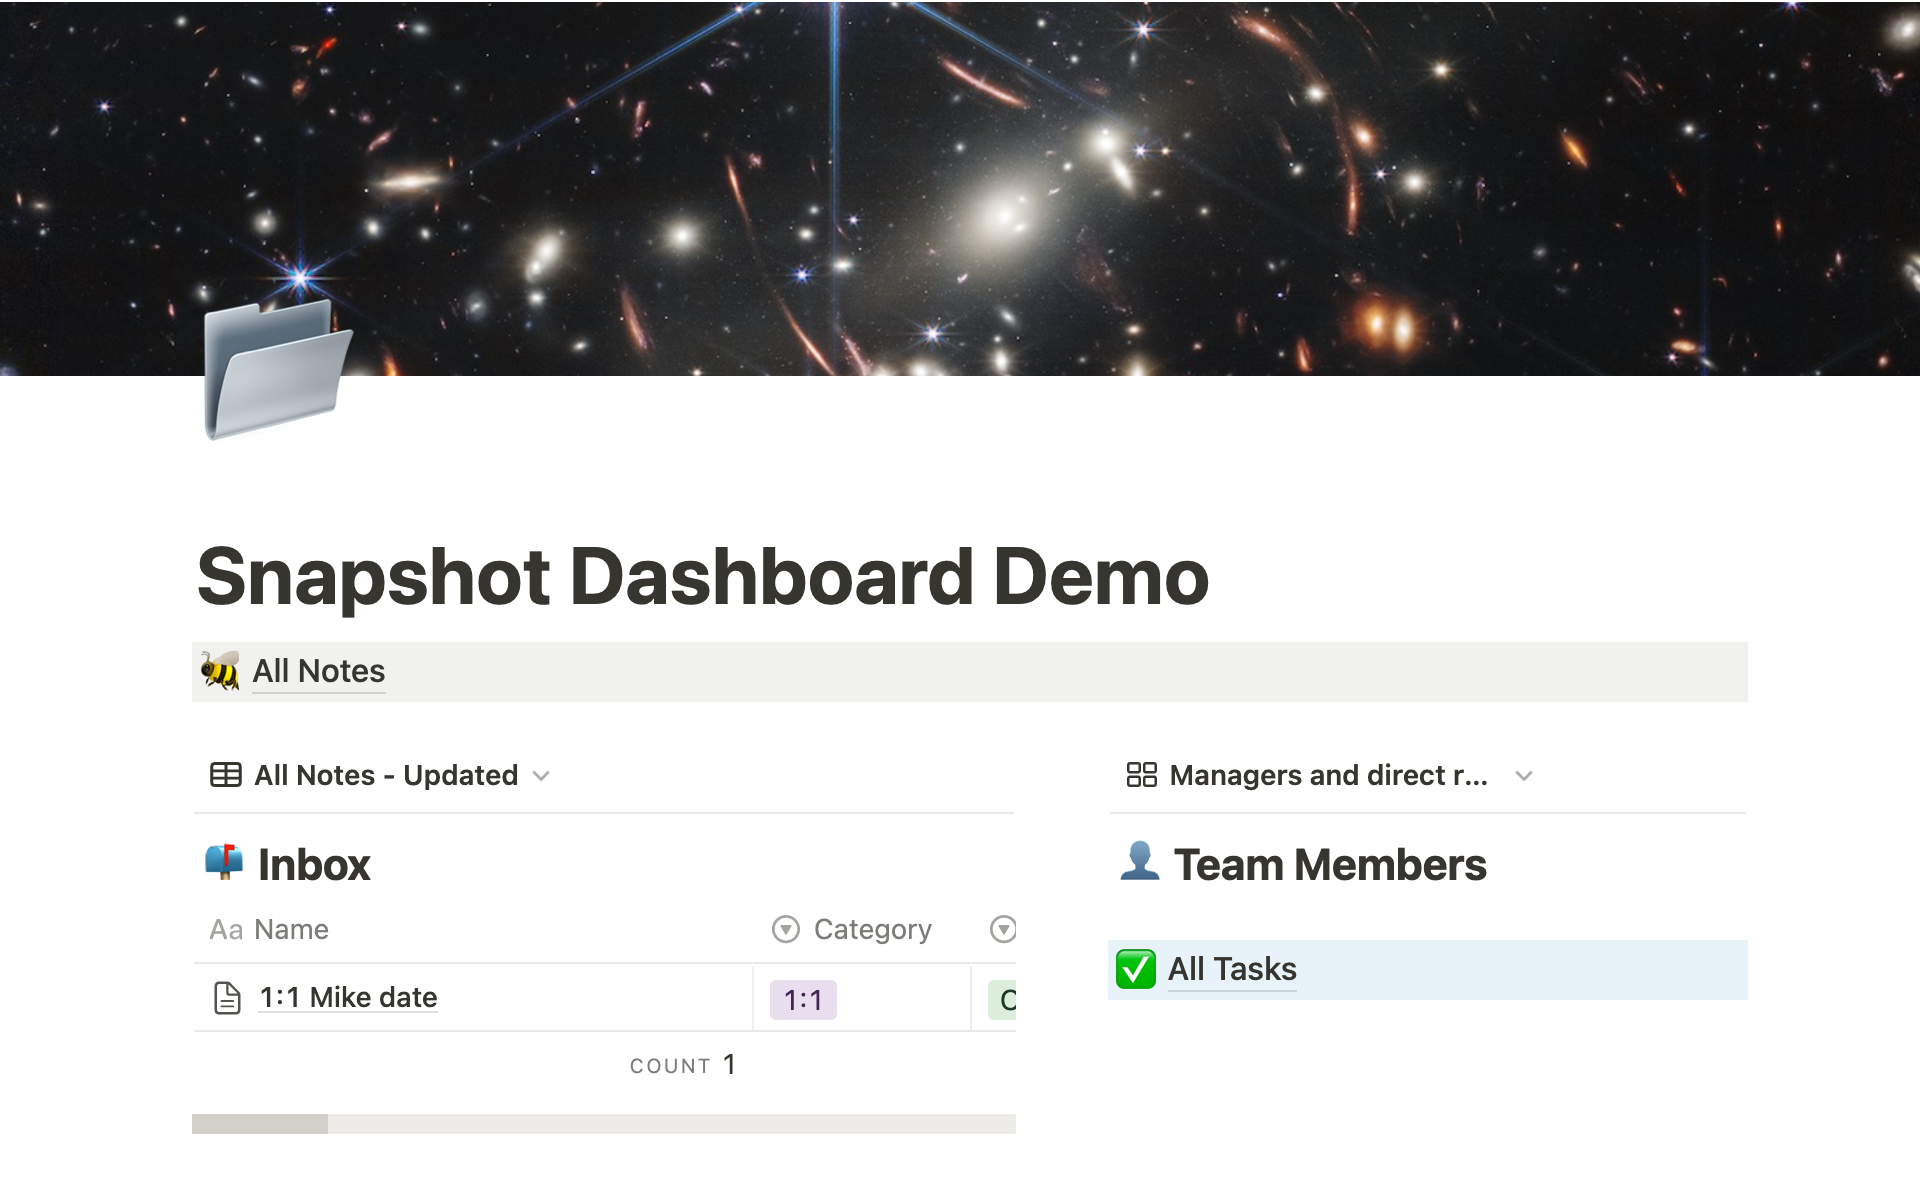 Snapshot dashboard demo